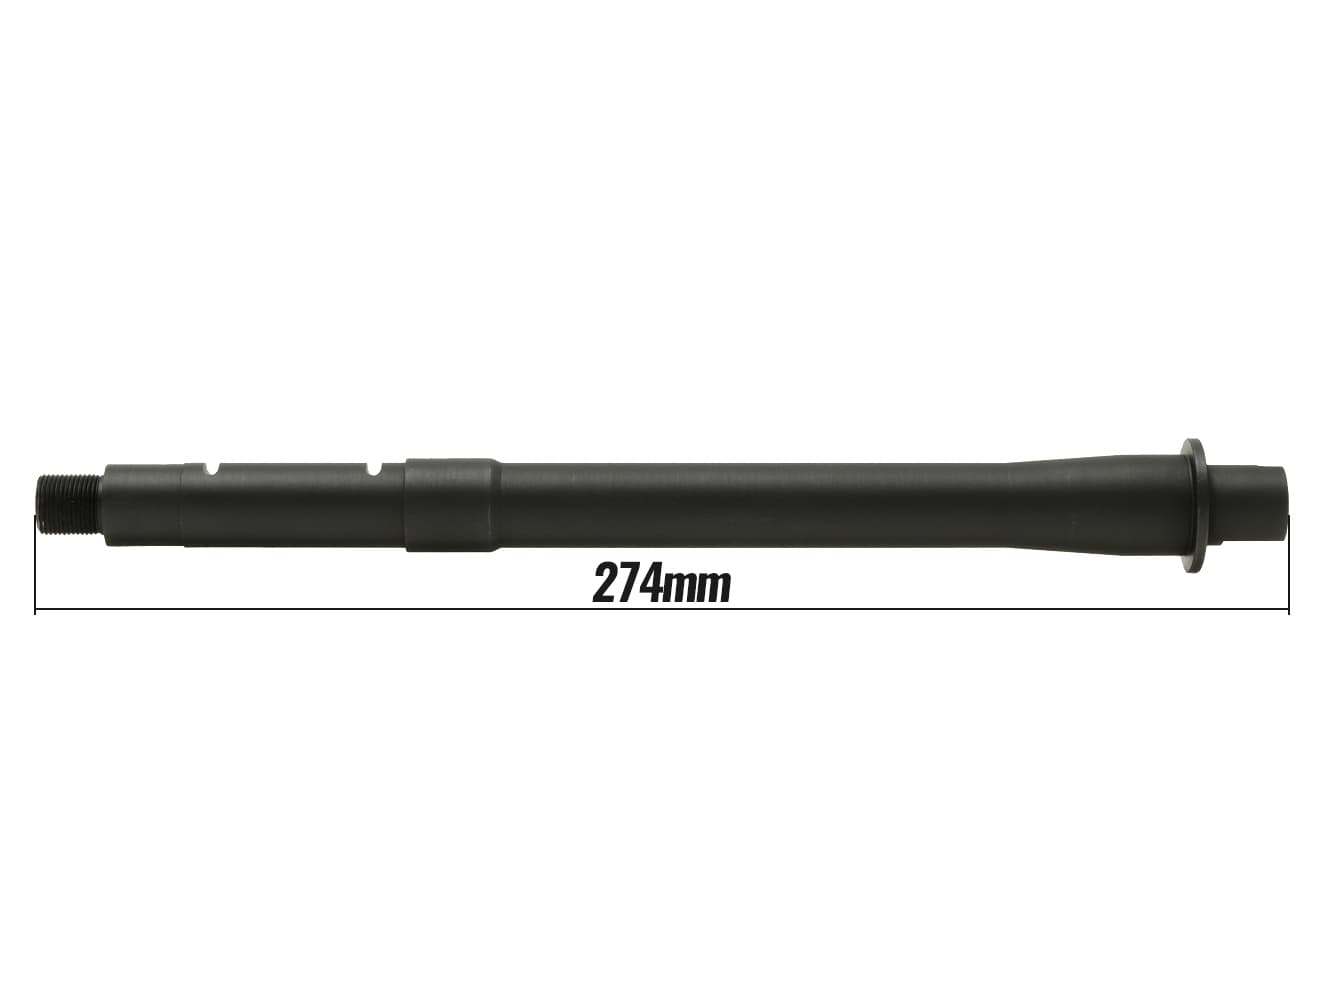 GUNS MODIFY 10.5インチ スチールCNC カービンレングス ヘビーバレル for 東京マルイ GBB M4